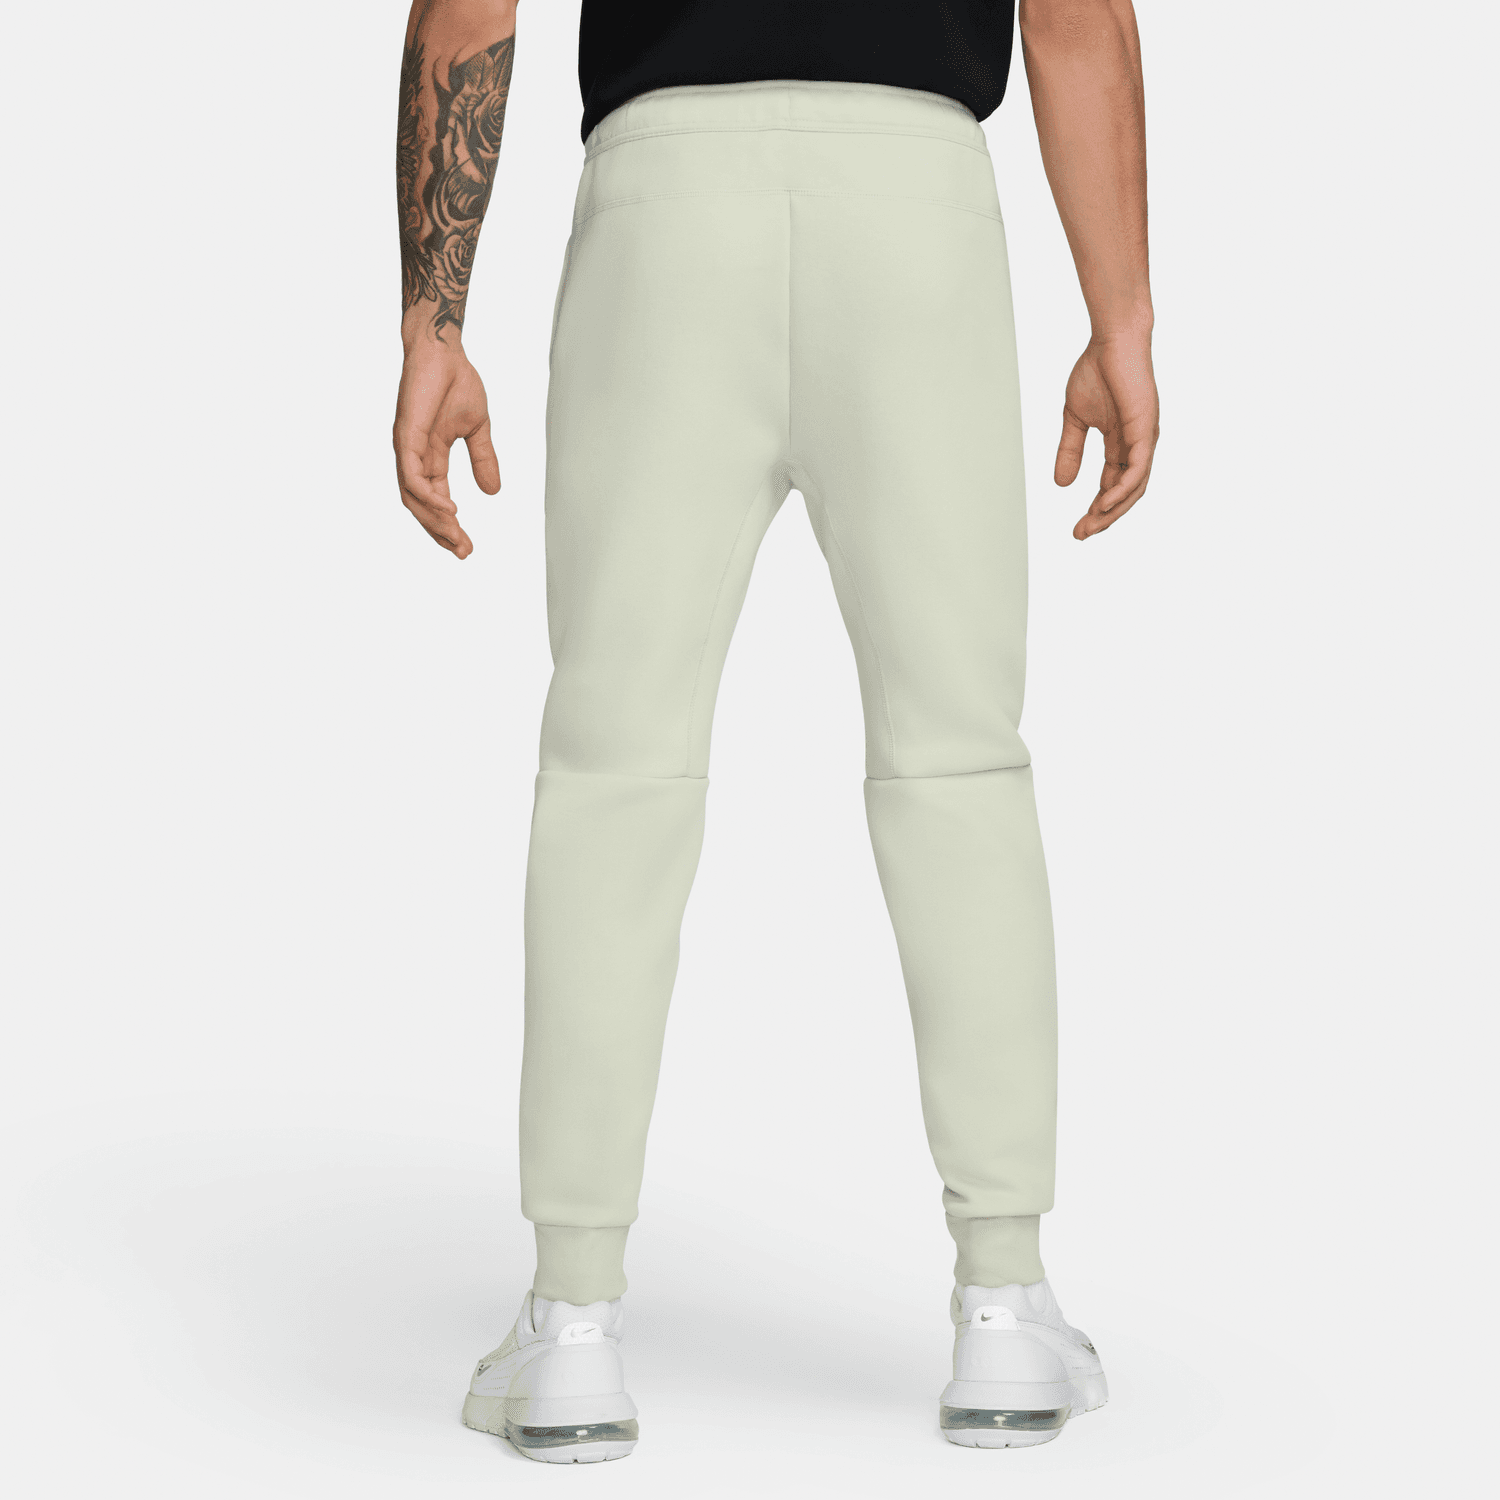 Pantalon Nike Tech Fleece - Beige/Noir